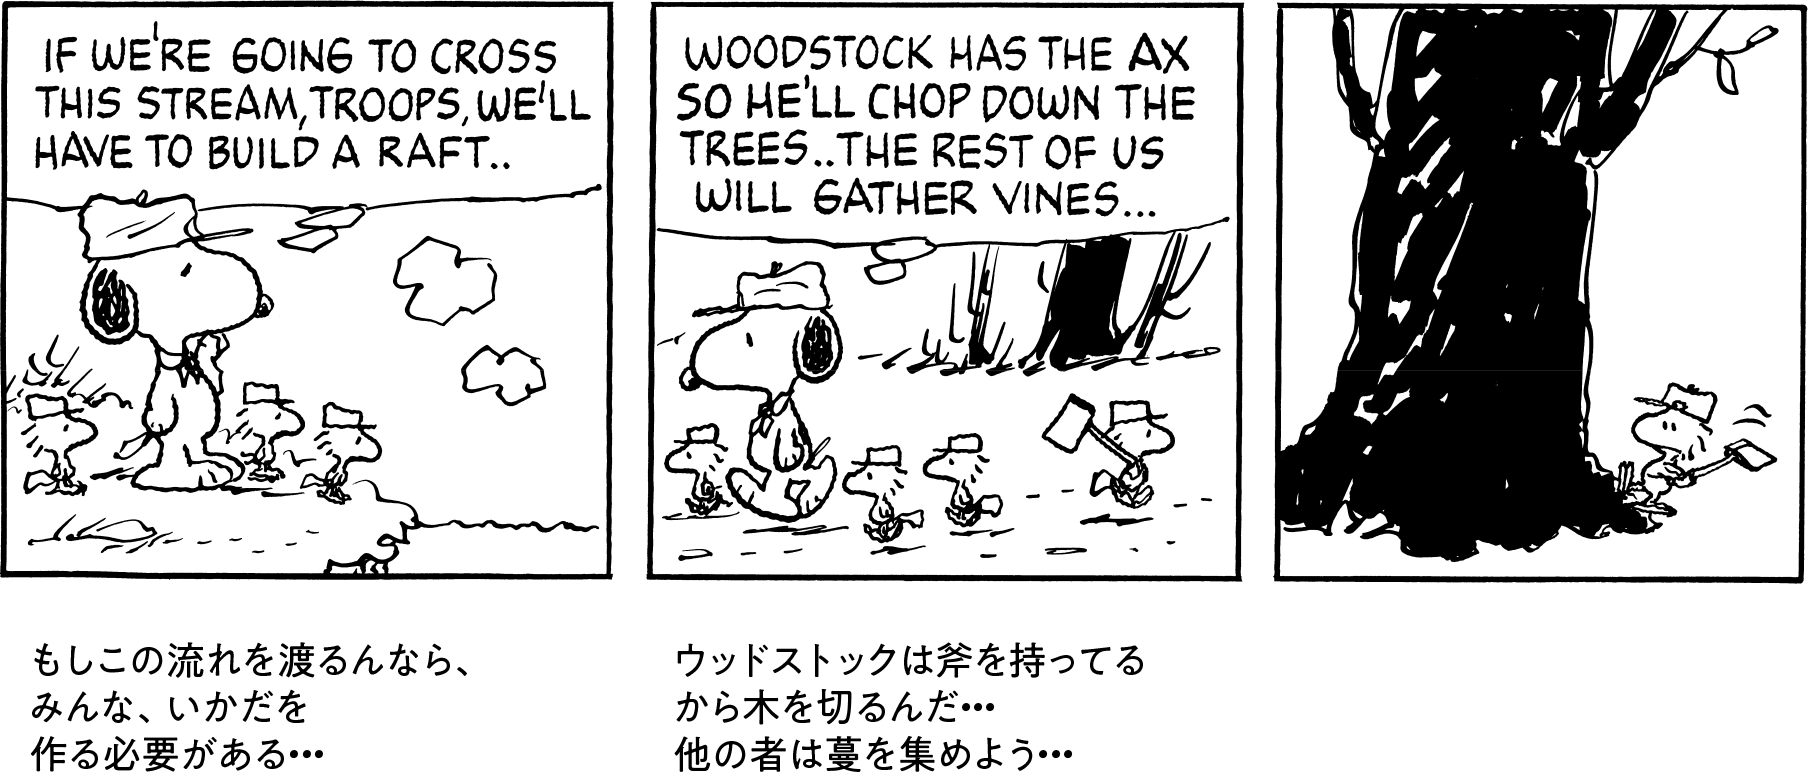 もしこの流れを渡るんなら、みんな、いかだを作る必要がある… ウッドストックは斧を持ってるから木を切るんだ…他の者は蔓を集めよう…